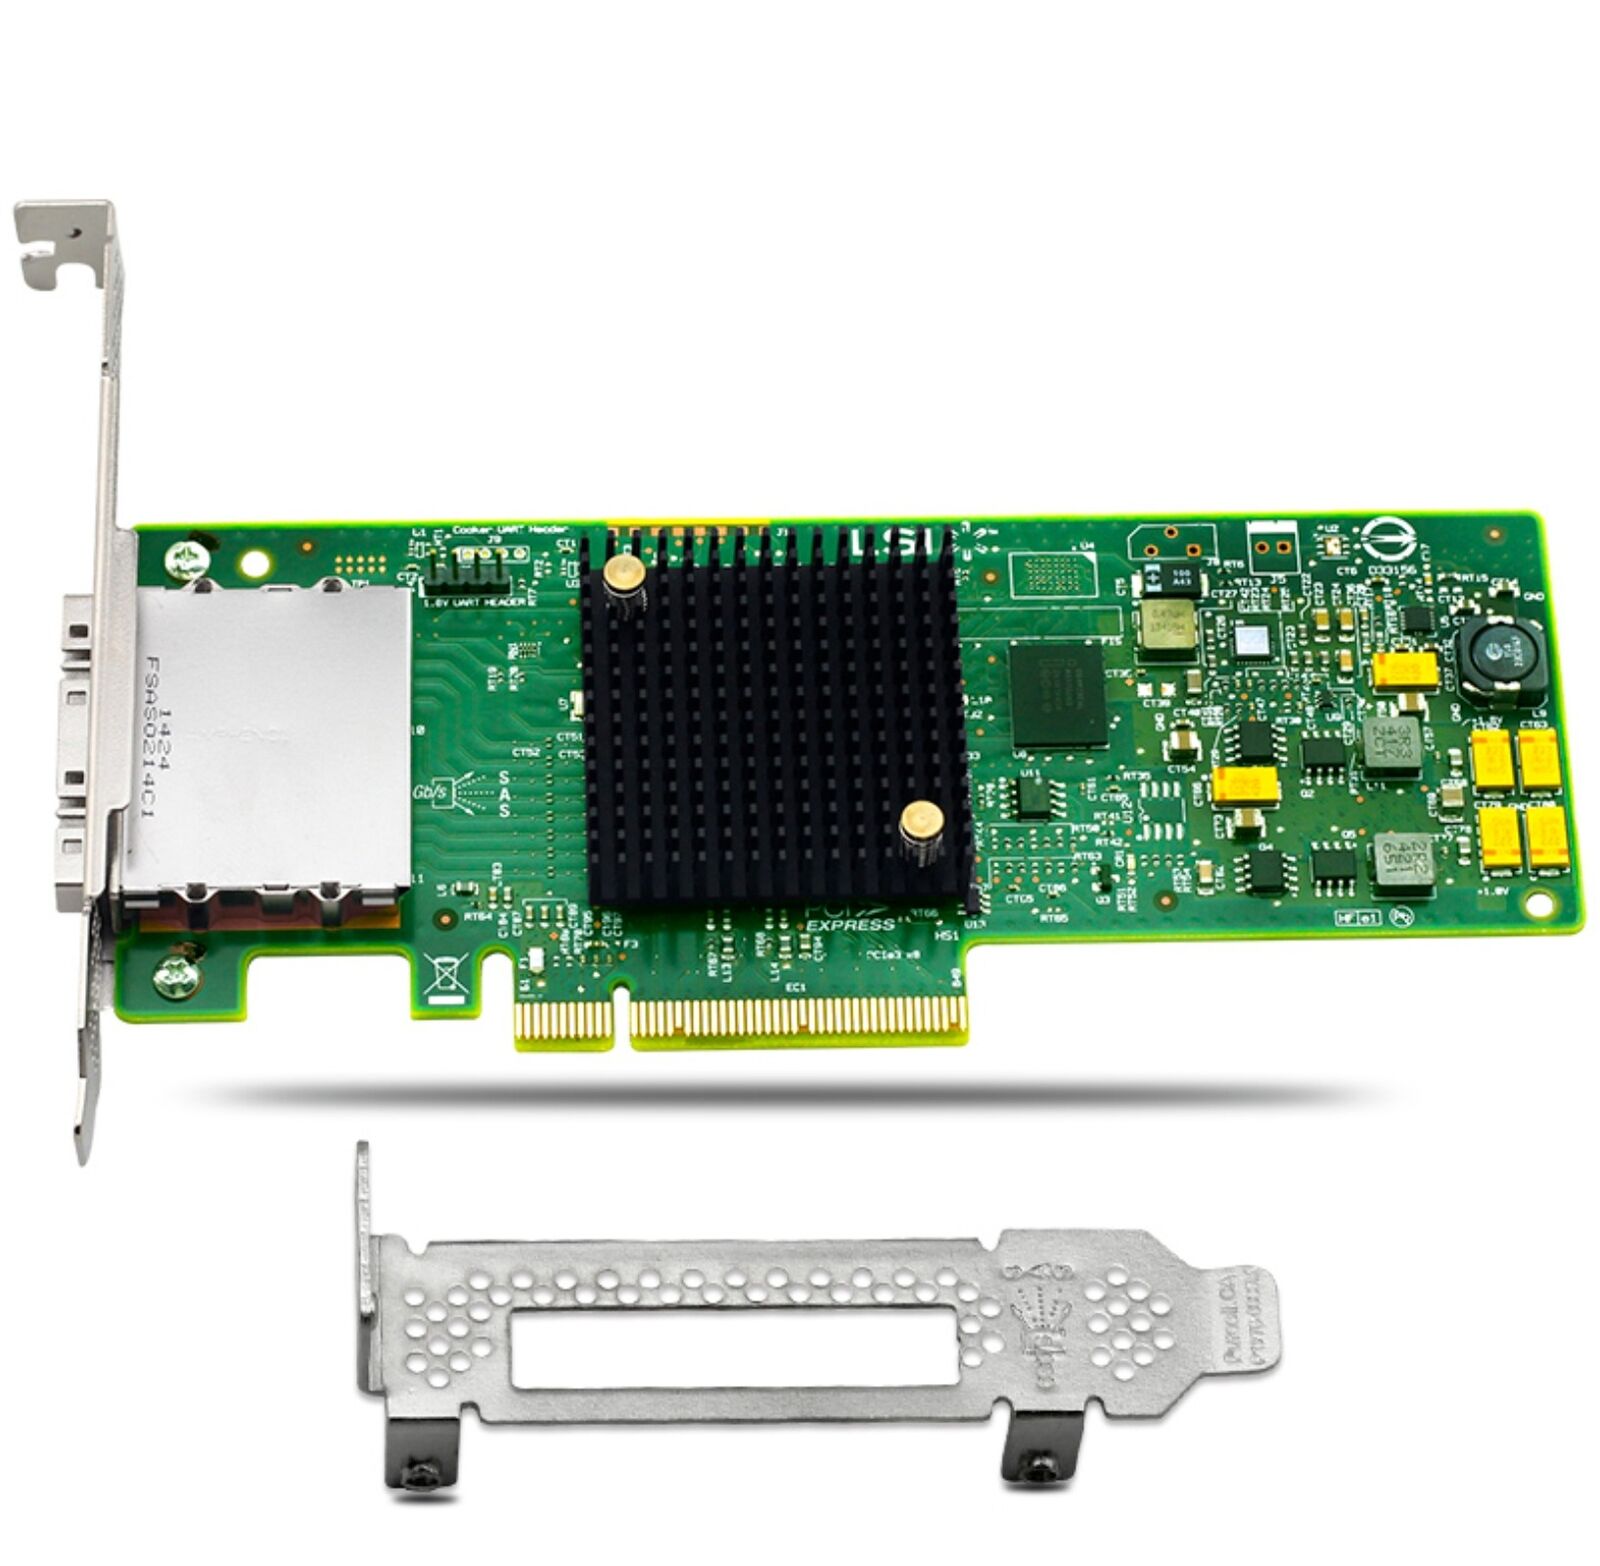 NEW LSI 9207-8e SAS 6Gb/s 8 Port PCI-E External JBOD HBA RAID Card SAS9207-8e